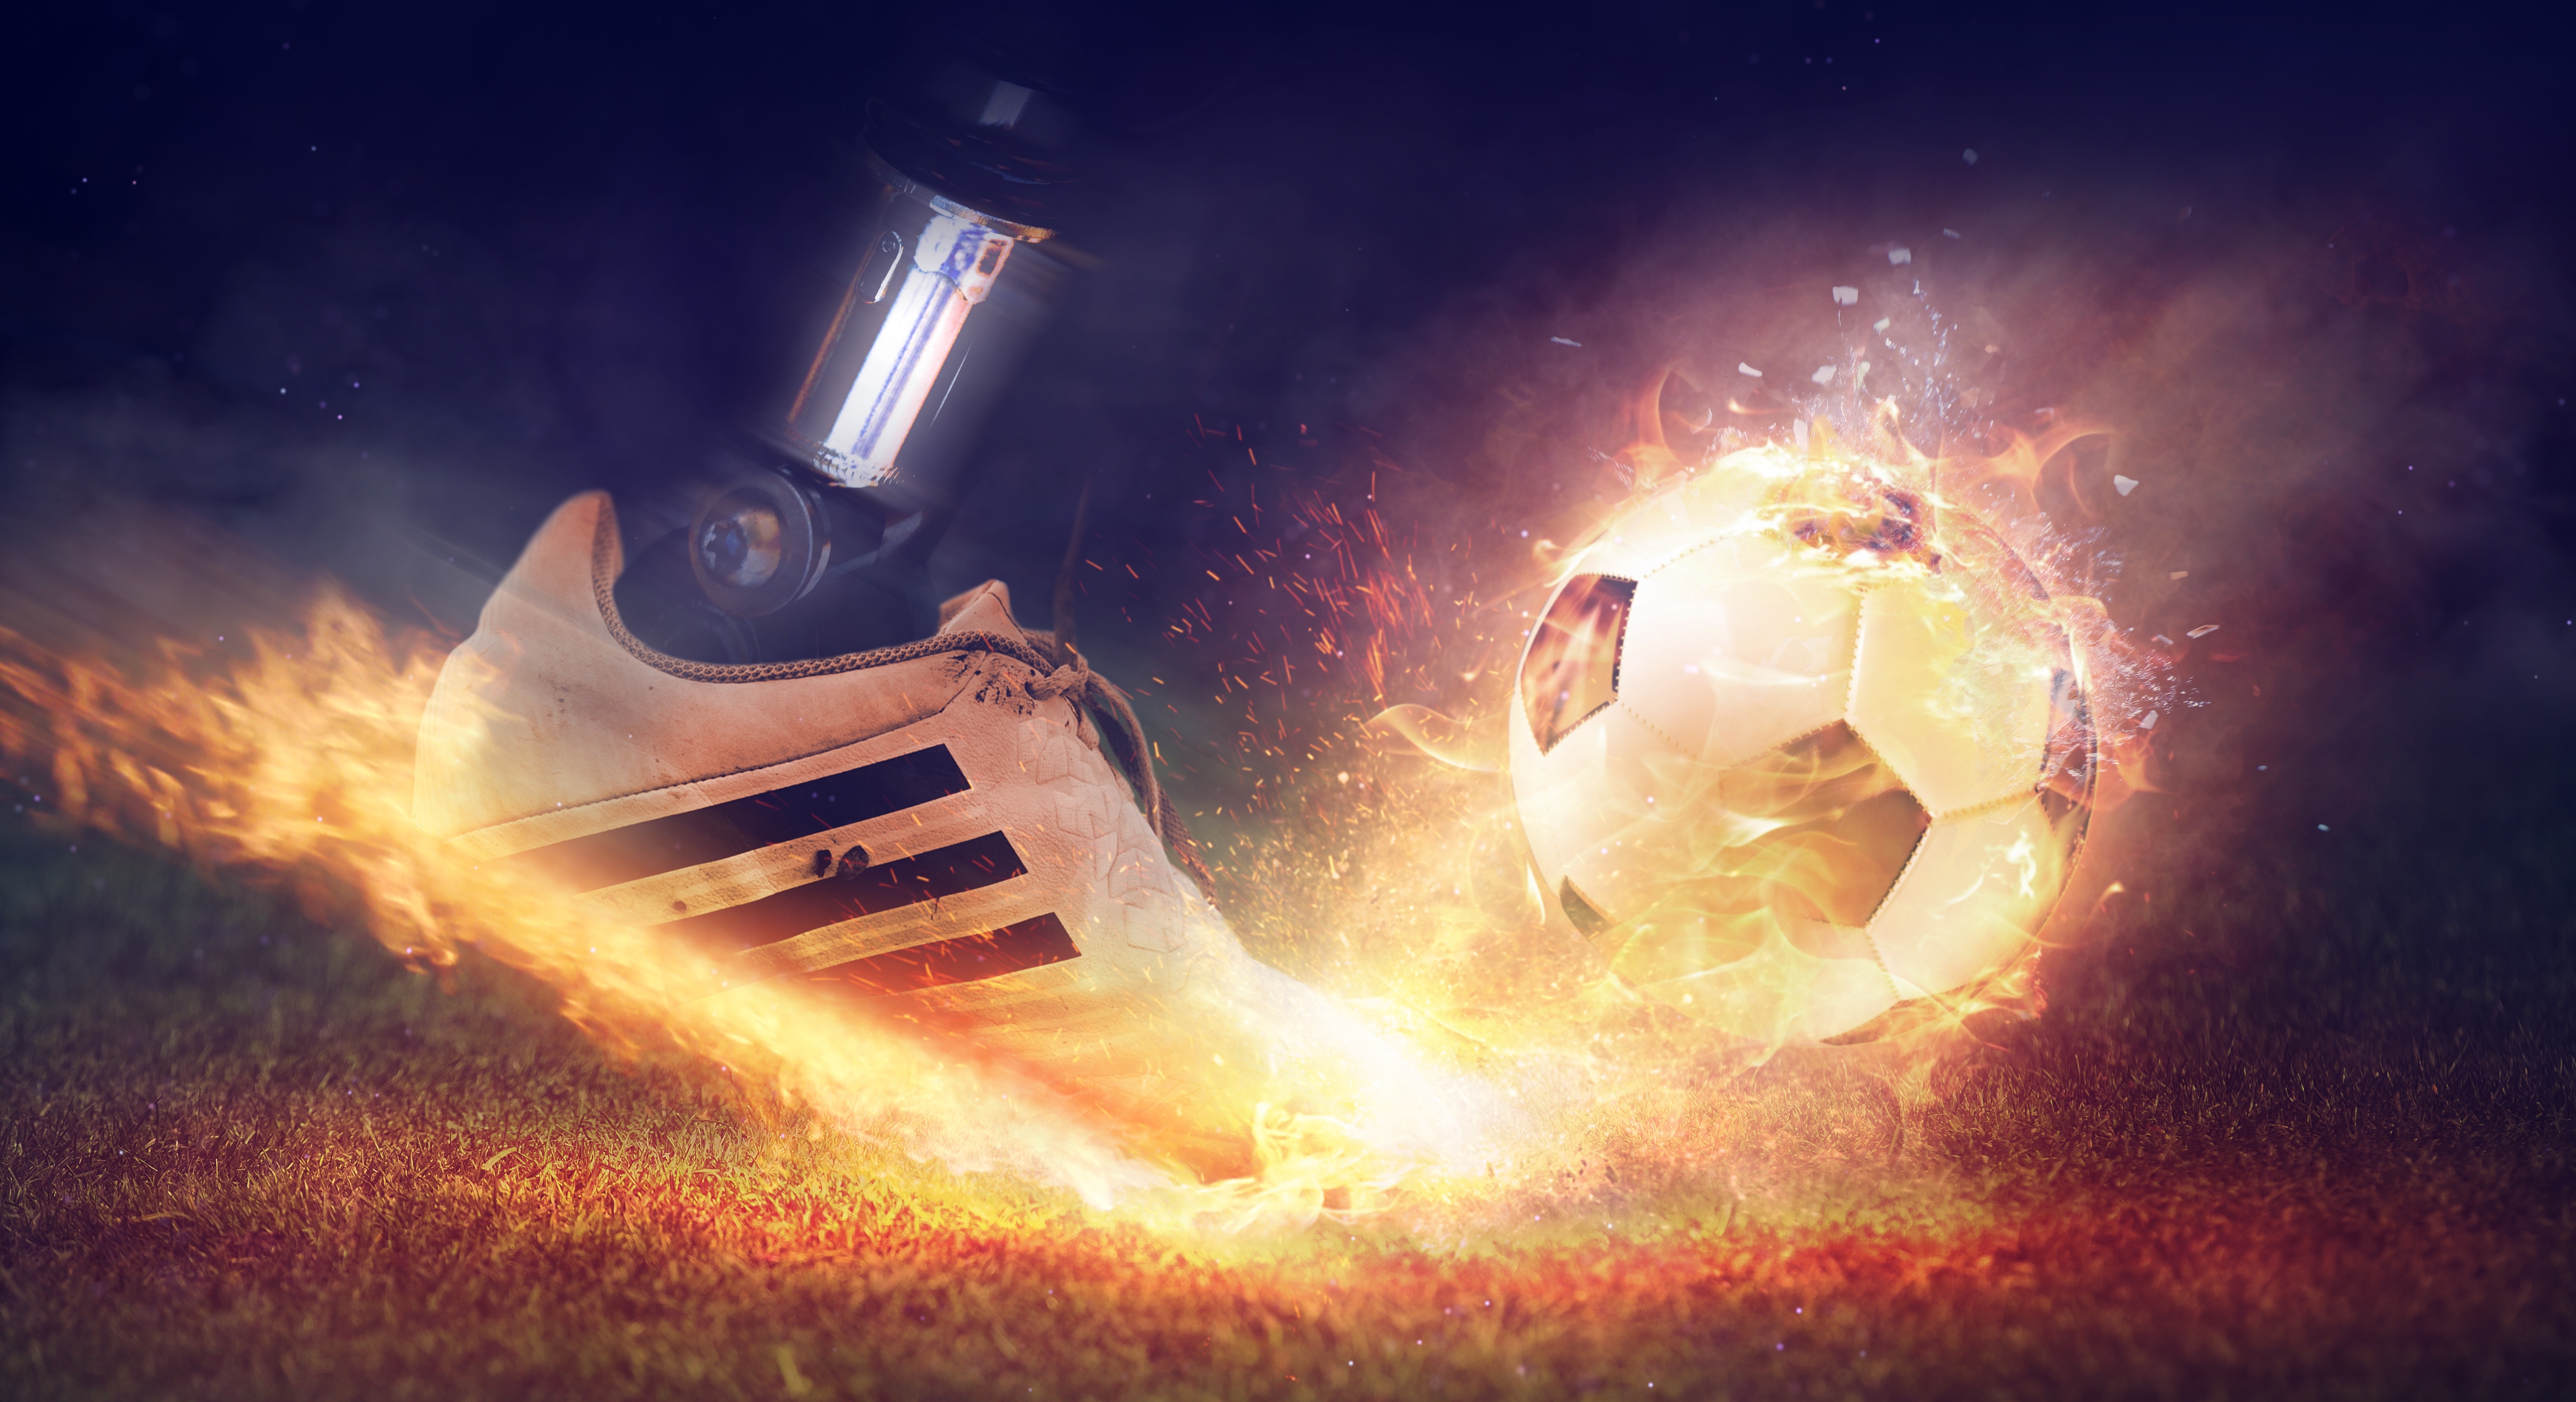 Бесплатное фото Нога робота пинает горящий мяч